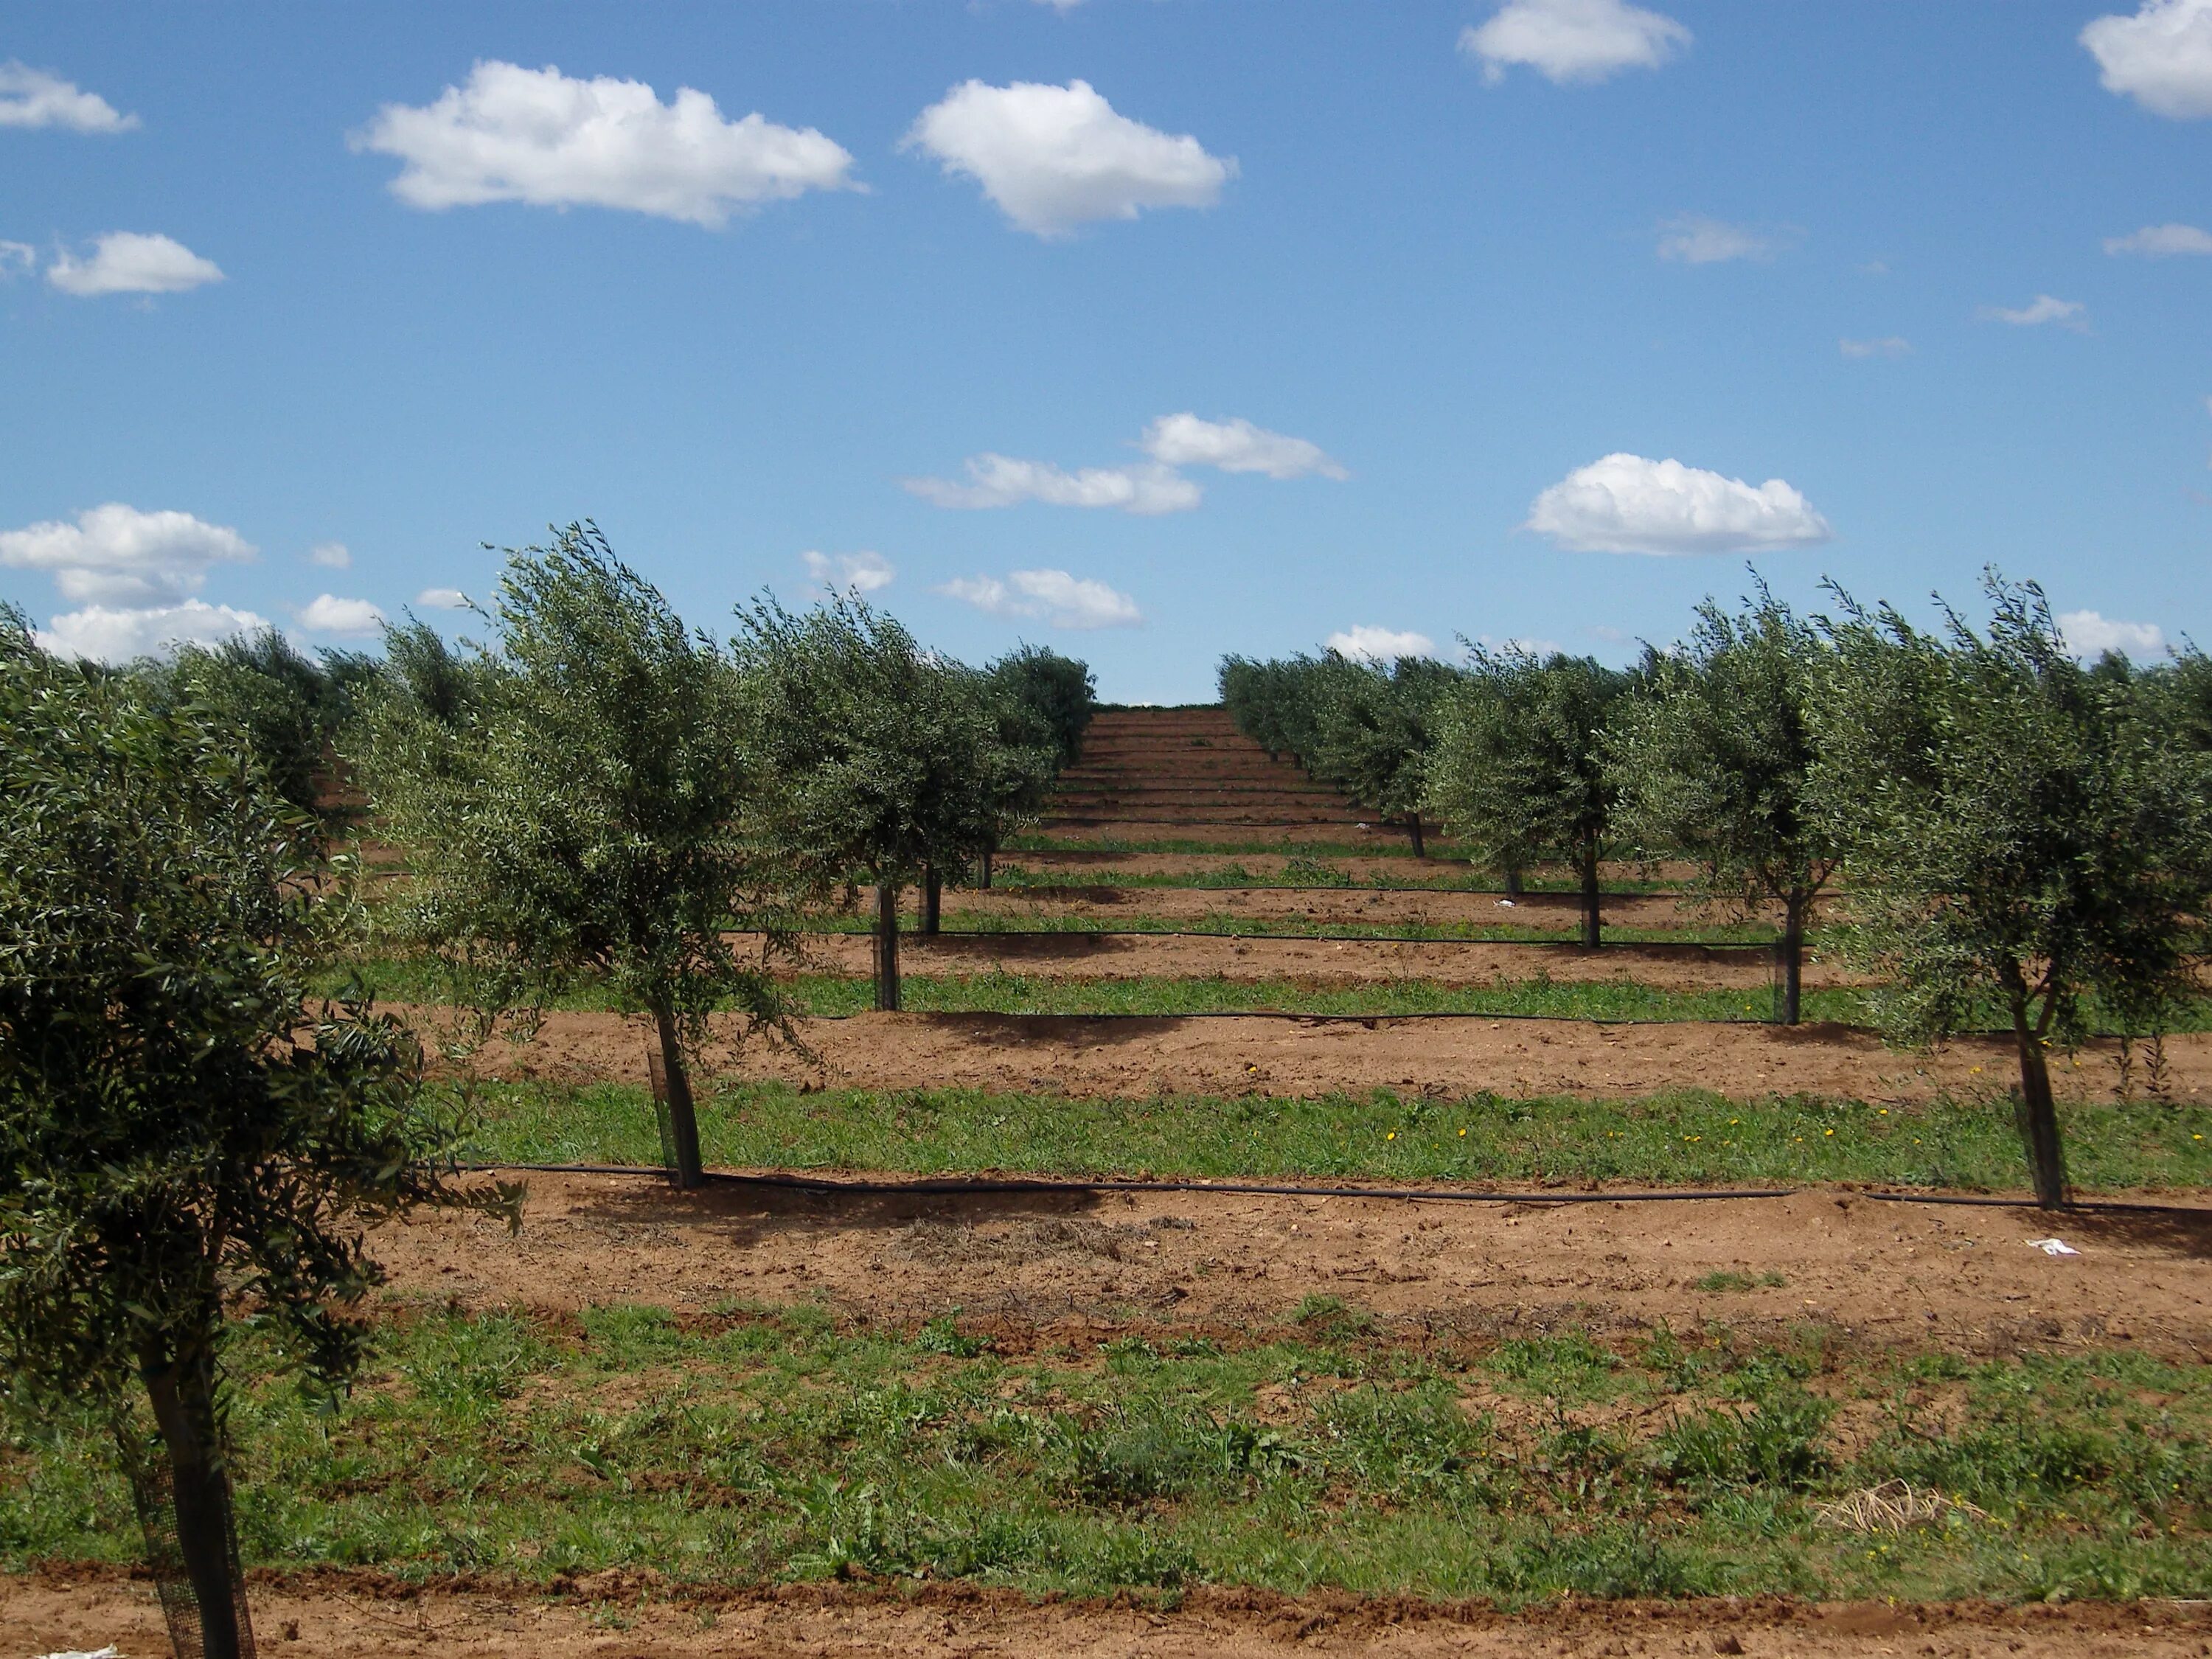 Дерево плантации. Оливковые Рощи в Португалии Алентежу. Тоскана оливковые Рощи. Оливковые деревья в Португалии. Португалия оливковая роща.